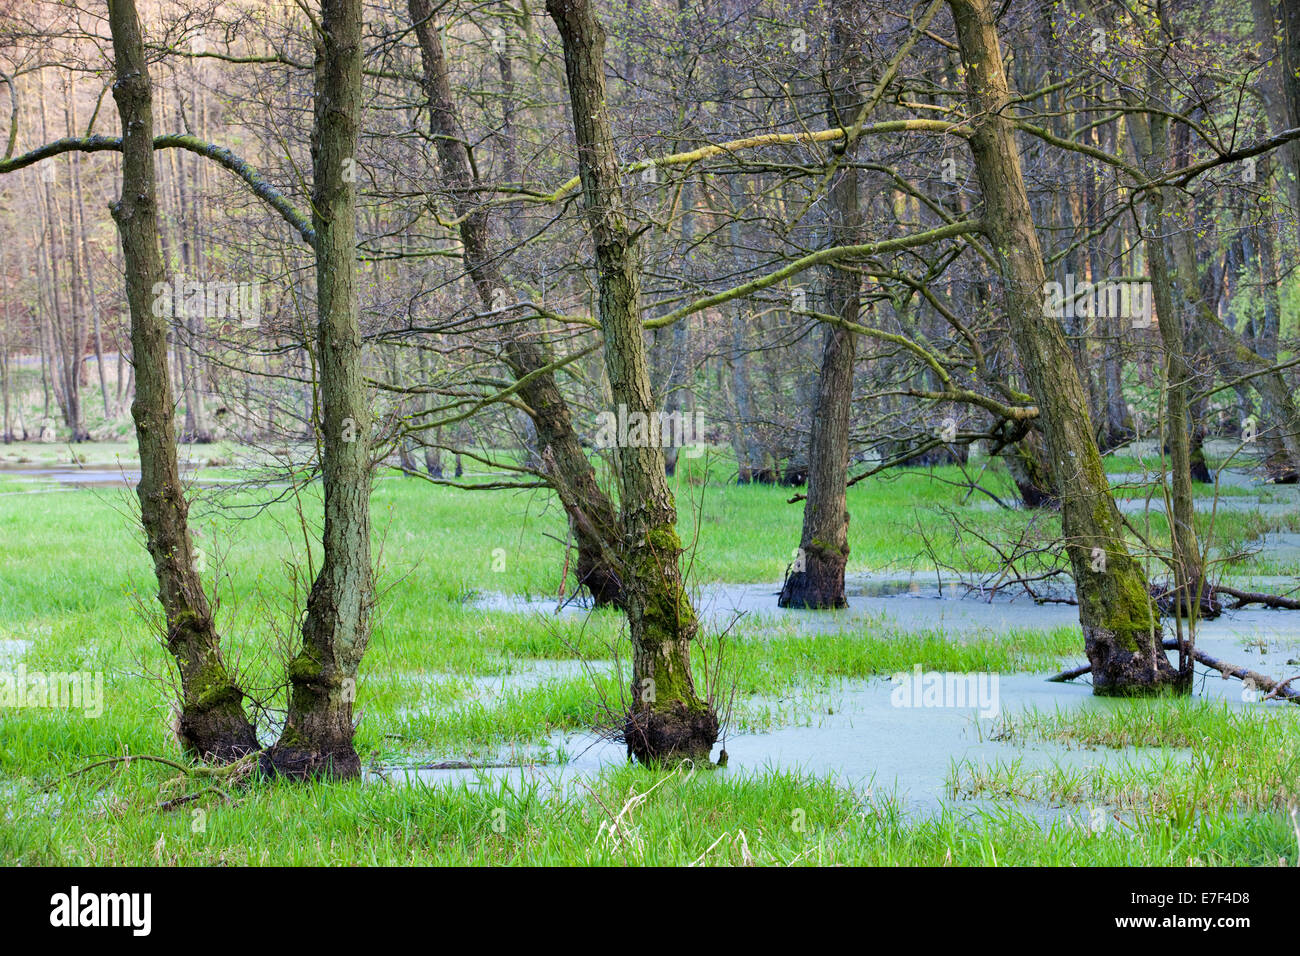 Avec la forêt, des zones humides du Parc National de Jasmund, UNESCO World Heritage Site, Rügen, Mecklembourg-Poméranie-Occidentale, Allemagne Banque D'Images